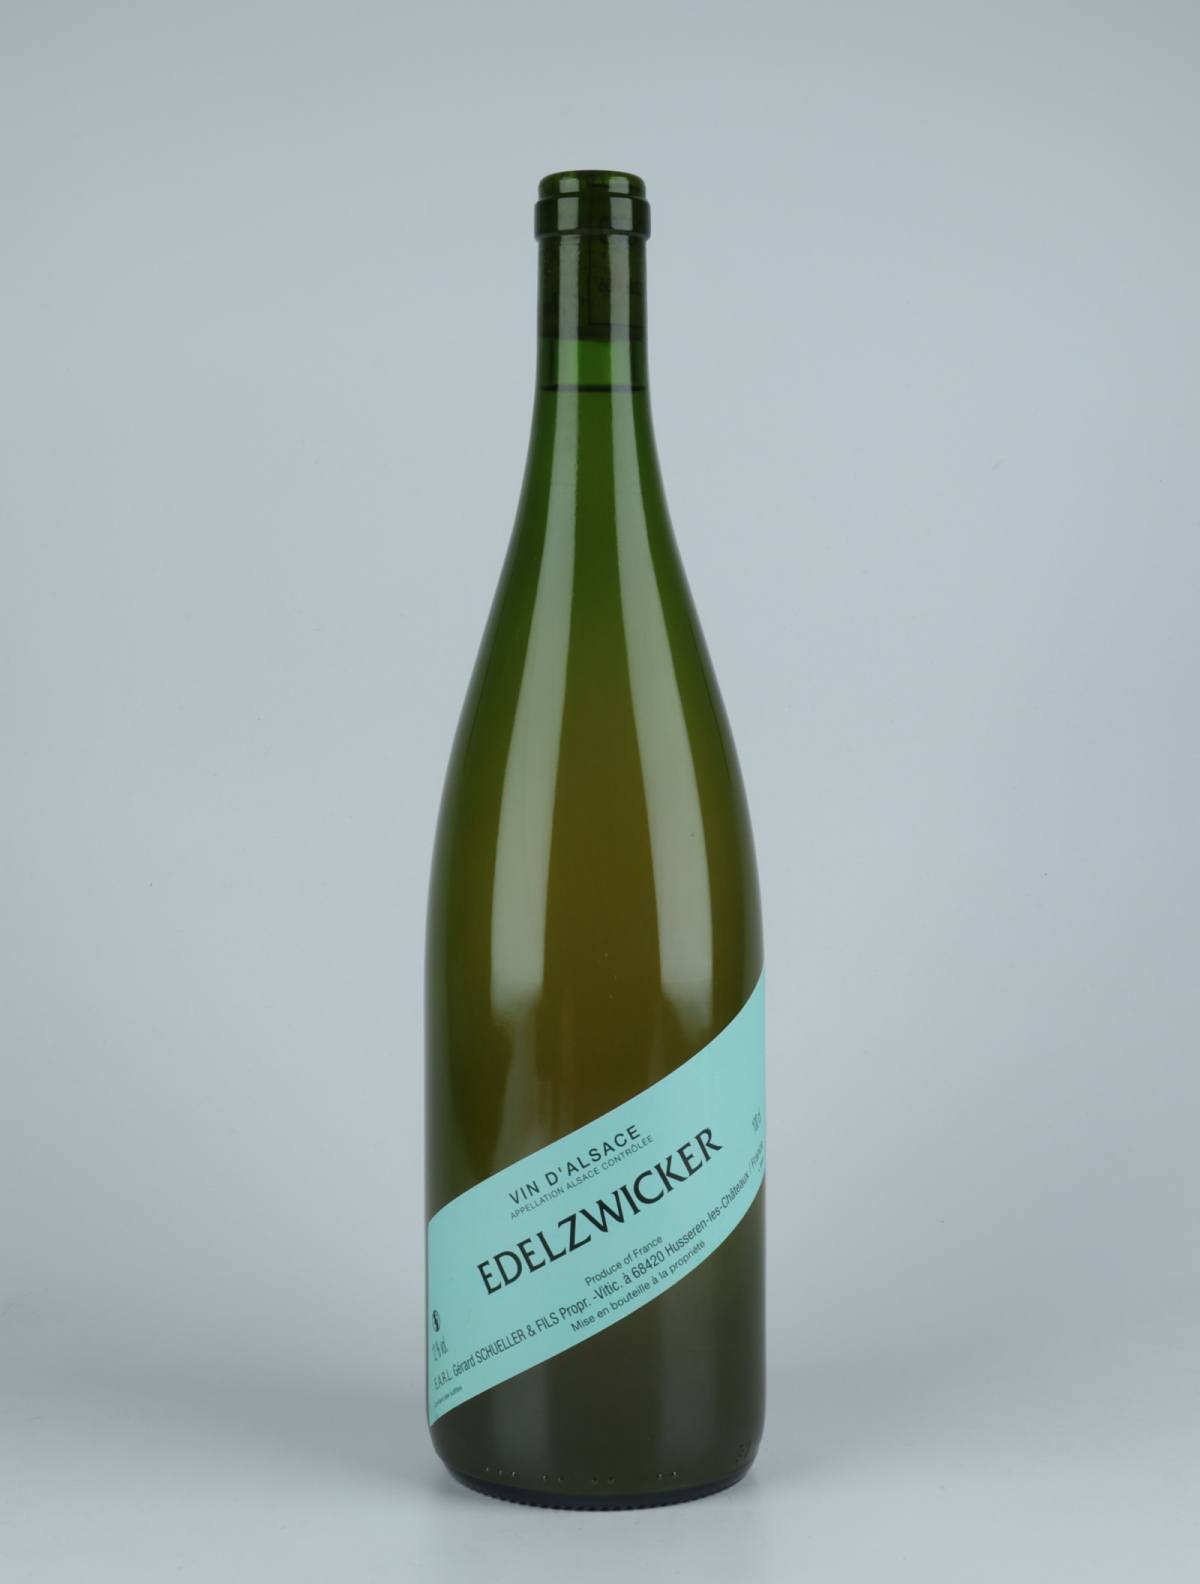 En flaske 2020 Edelzwicker Hvidvin fra Gérard Schueller, Alsace i Frankrig